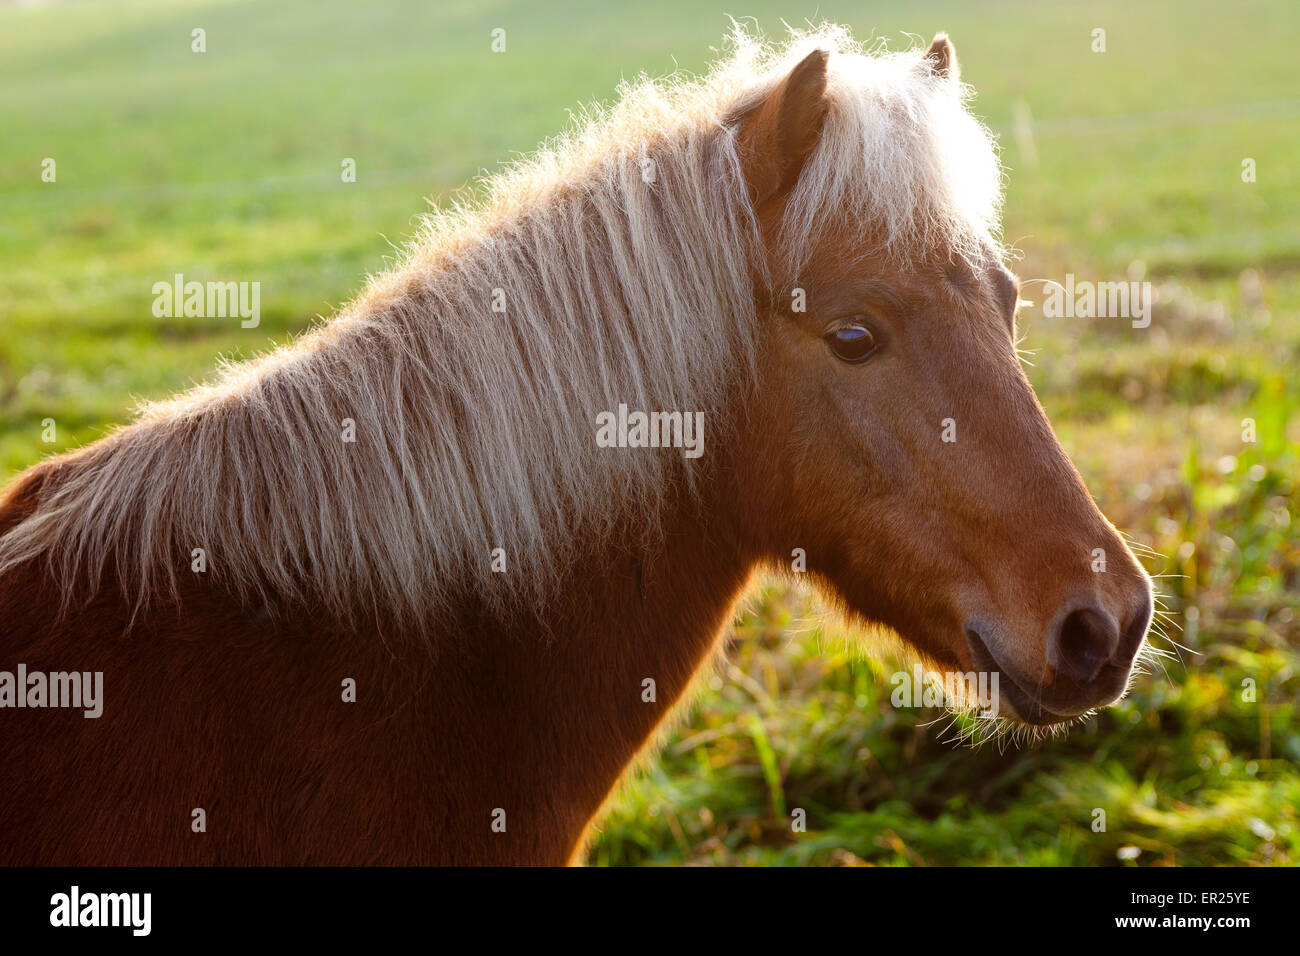 Europe, Germany, North Rhine-Westphalia, pony on a meadow.  Europa, Deutschland, Nordrhein-Westfalen, Pony auf einer Wiese. Stock Photo